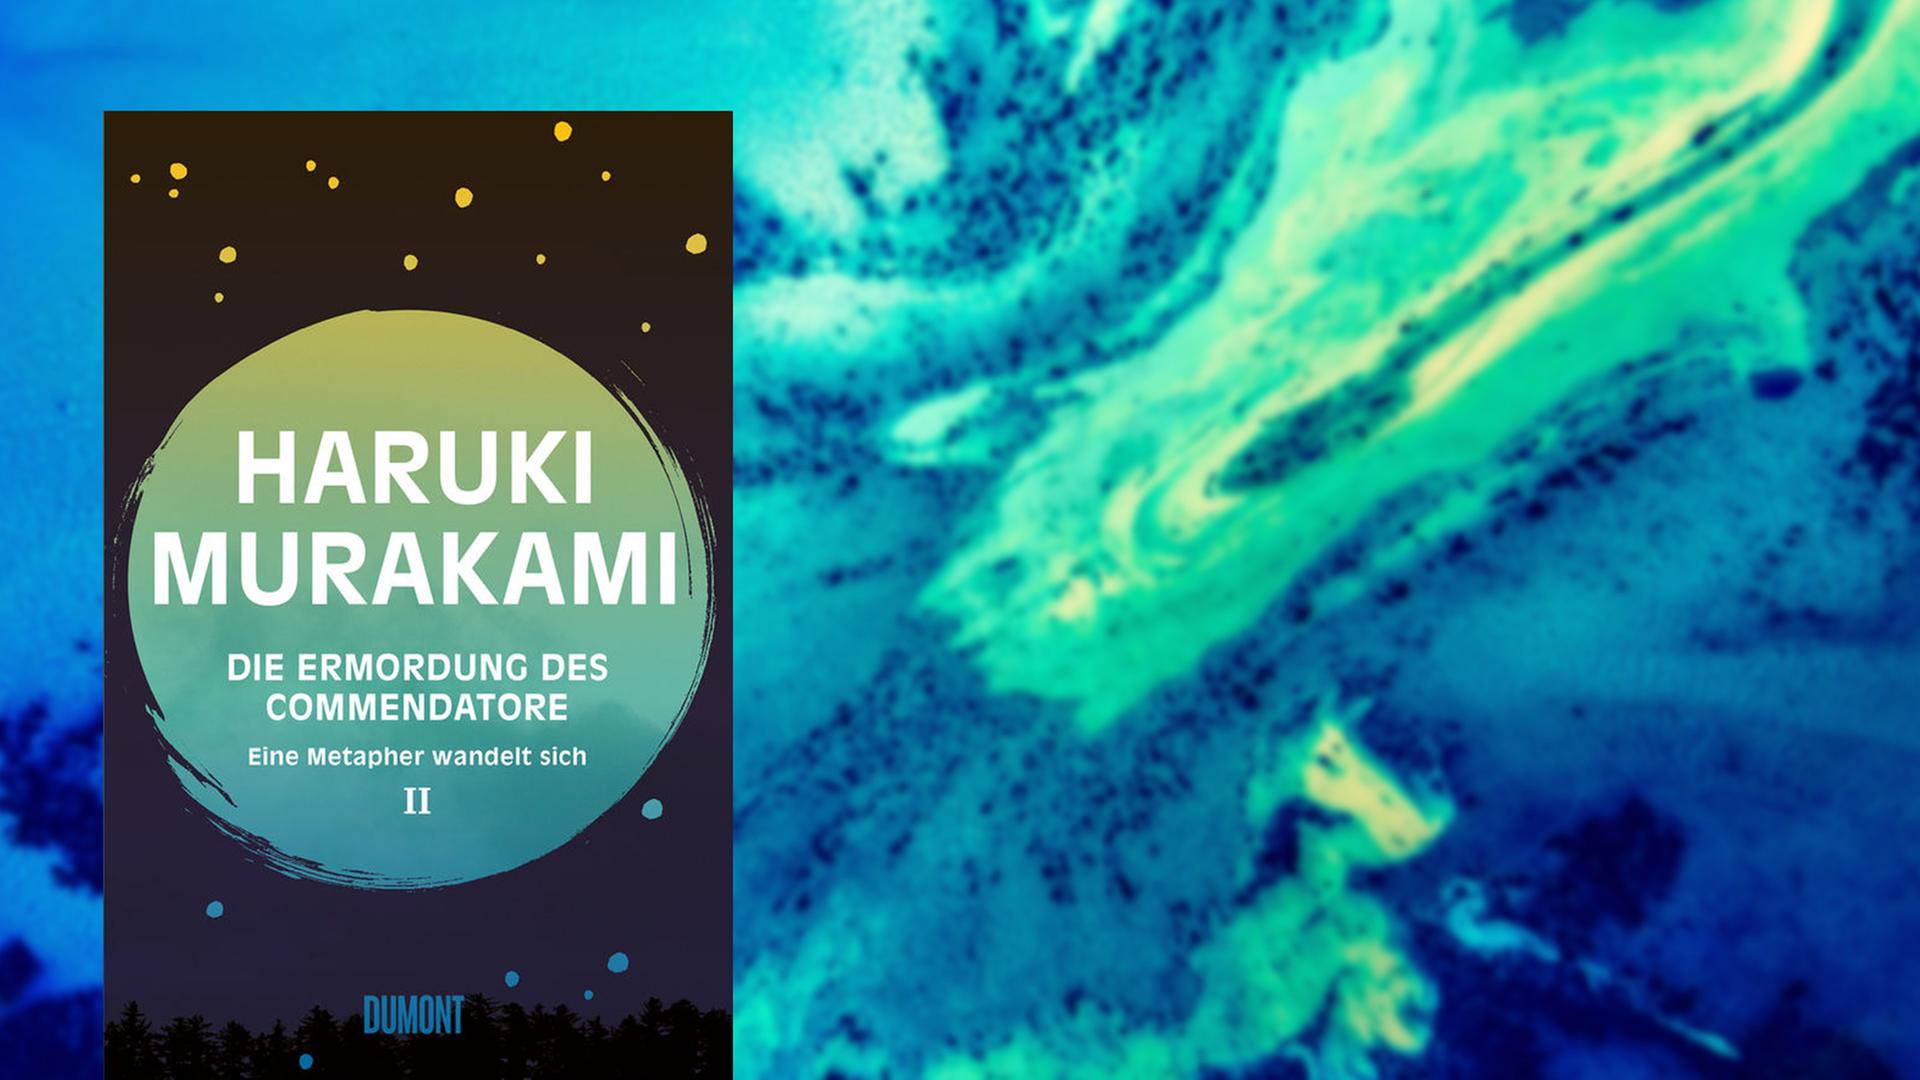 Im Vordergrund das Cover von Haruki Murakamis "Die Ermordung des Commendatore. Band 2", im Hintergrund ein Ausschnitt aus einem experimentellen Kunstwerk, bei dem verschiedene Flüssigkeiten in Blau- und Grüntönen ineinanderfließen.